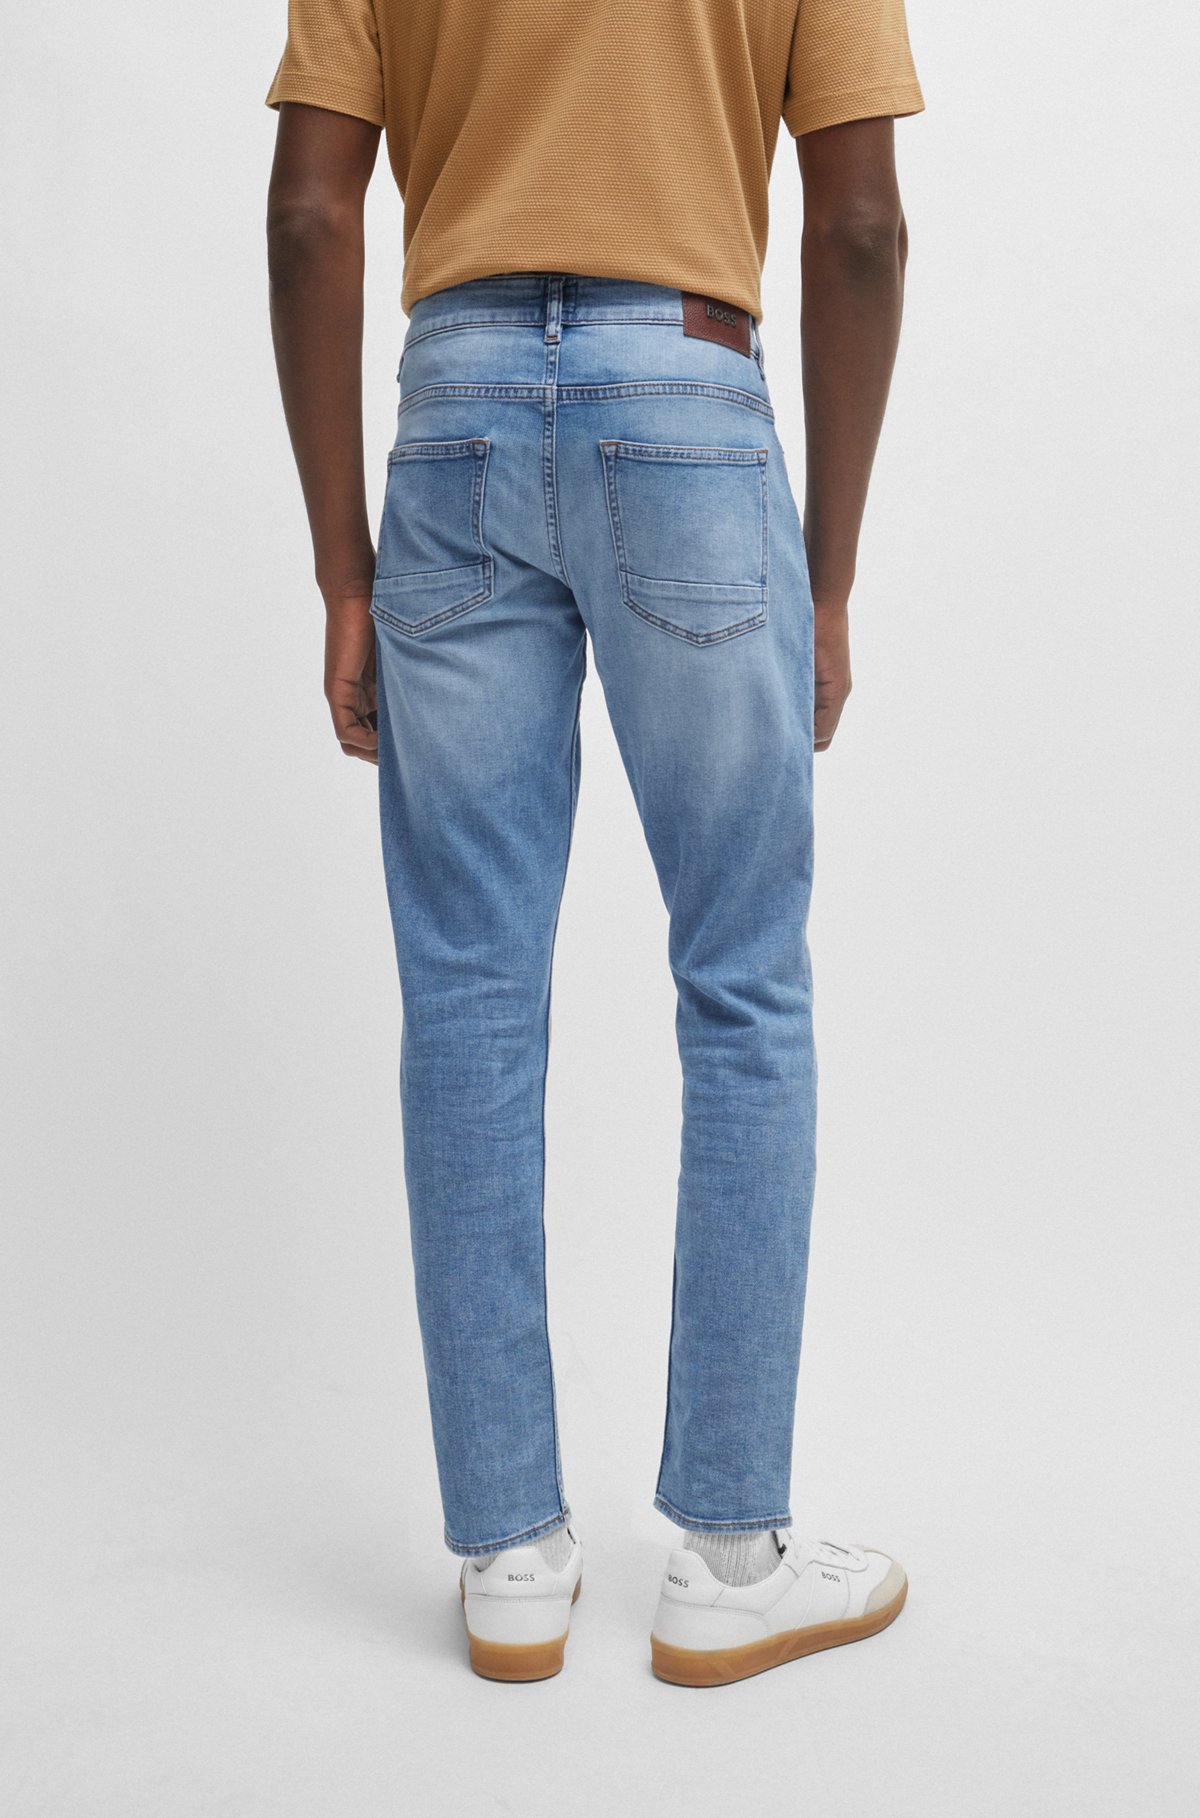 BOSS - Slim-fit jeans in blue super-soft stretch denim